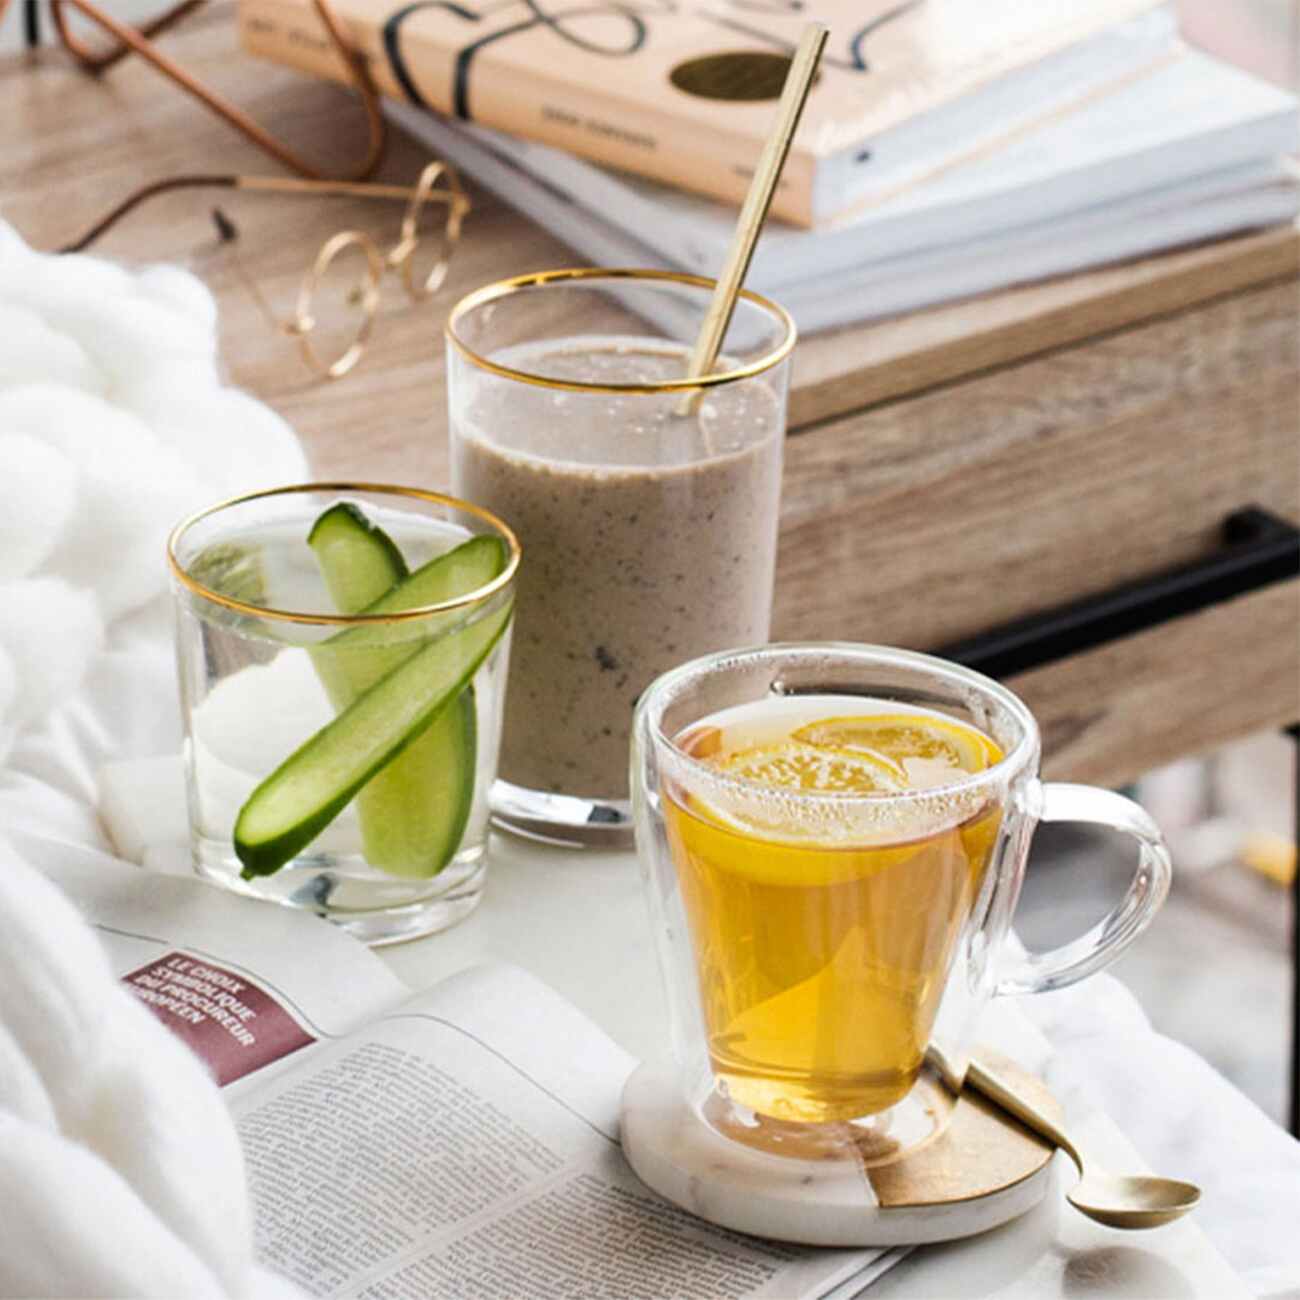 herbalife-nutrition-healthy-breakfast-in-bed-formula-1-shake-herbal-tea-and-aloe-vera-drink